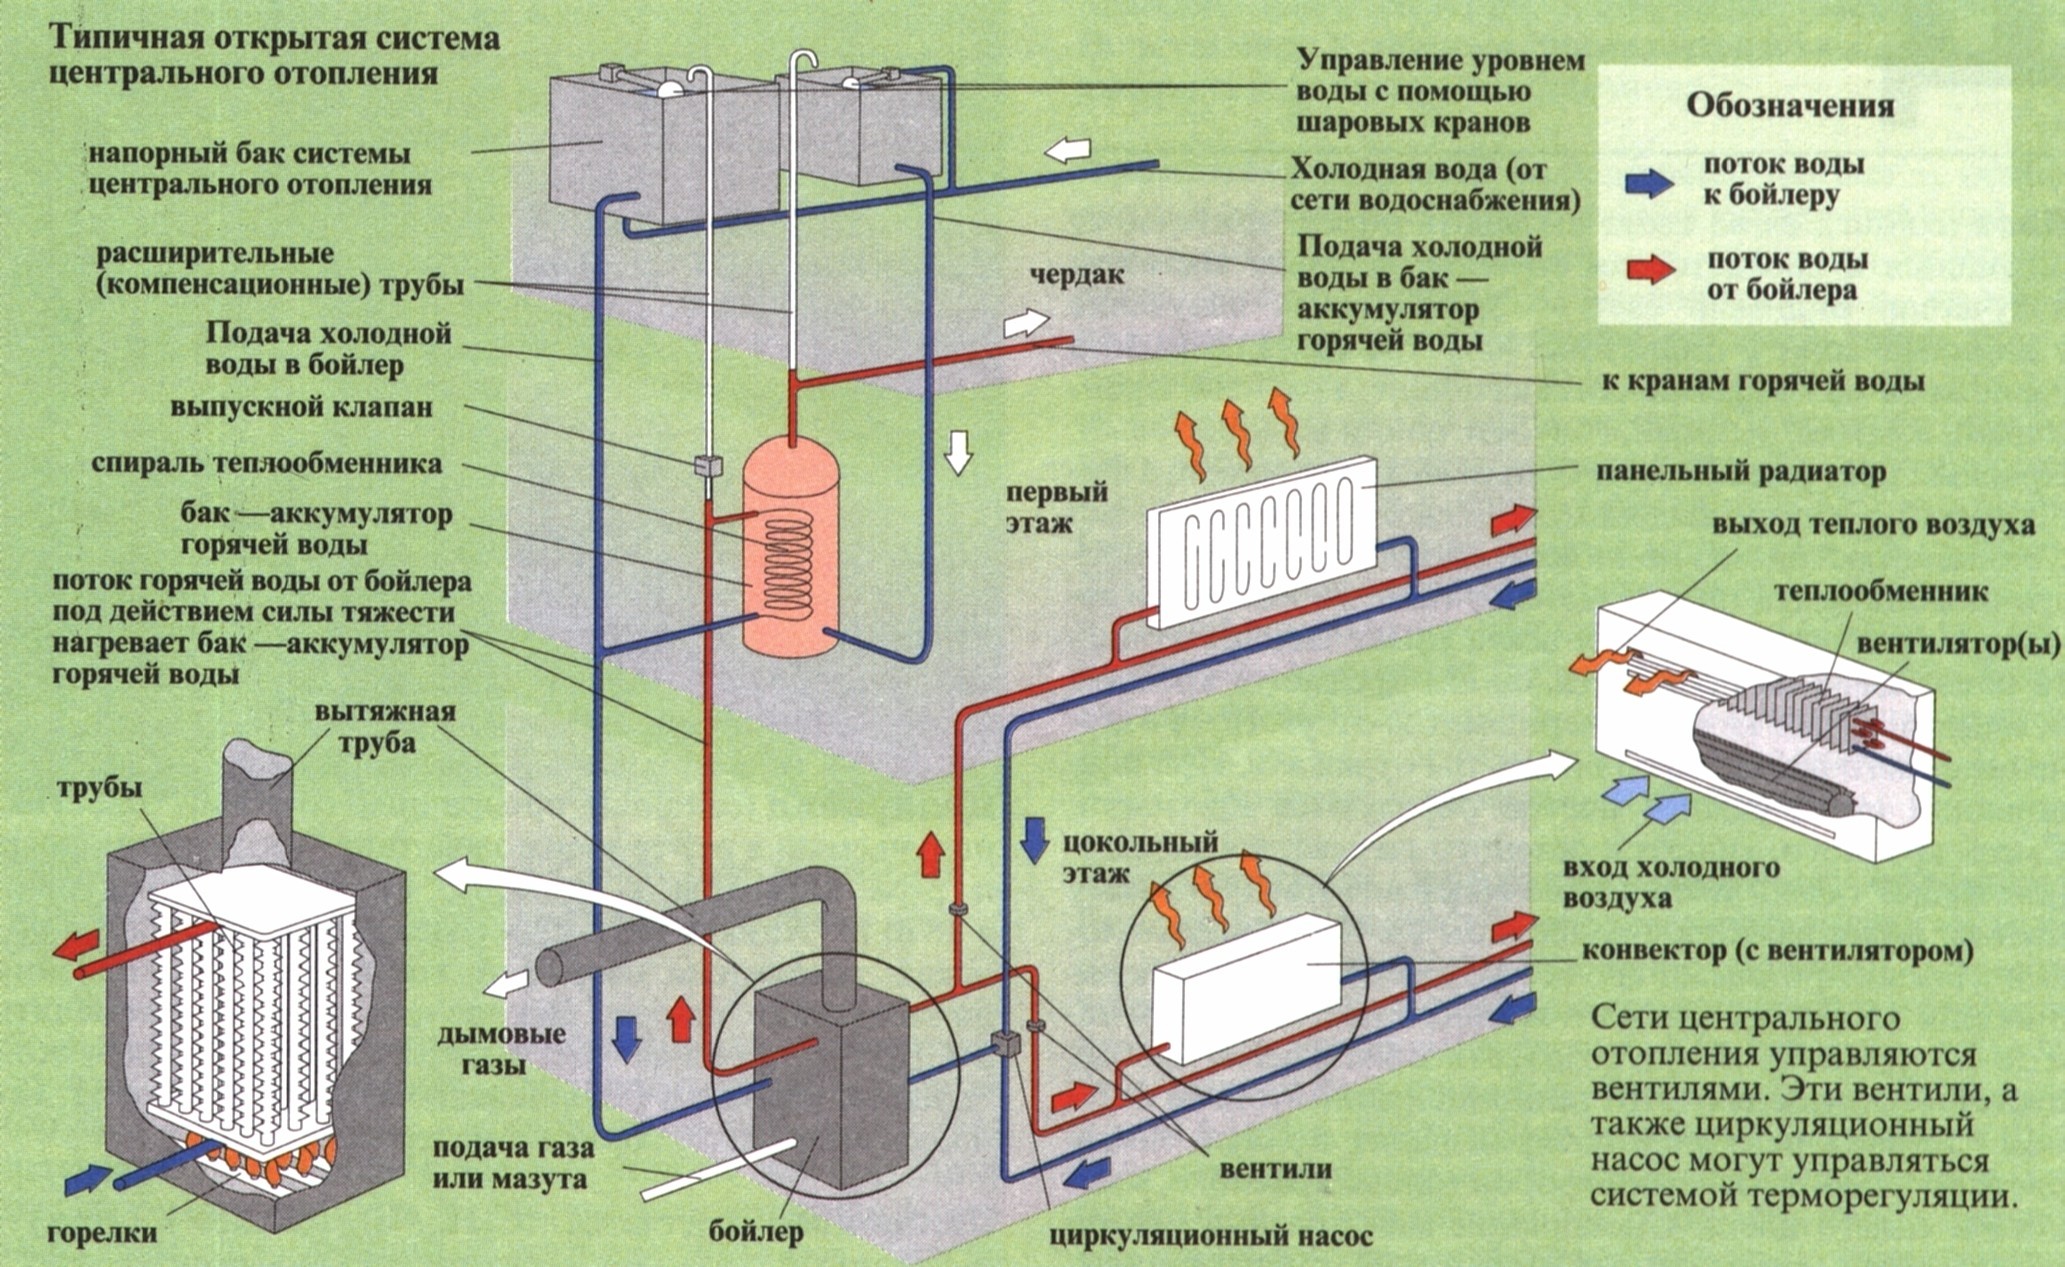 Качество воды системы отопления. Централизованная система отопления схема. Центральная система отопления схема. Централизованное отопление схема. Система парового отопление пар.